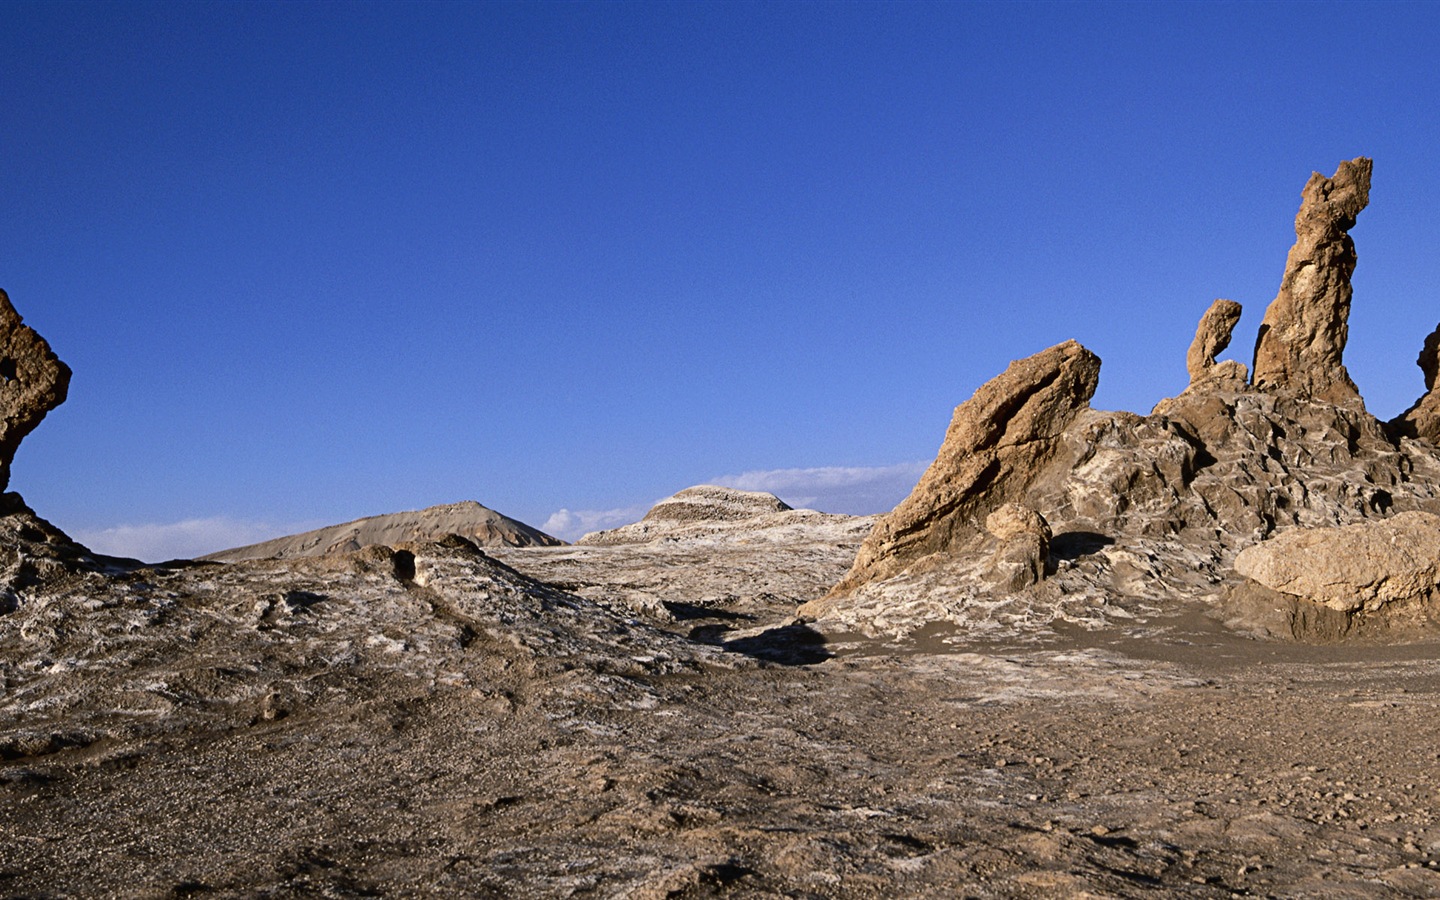 Les déserts chauds et arides, de Windows 8 fonds d'écran widescreen panoramique #11 - 1440x900